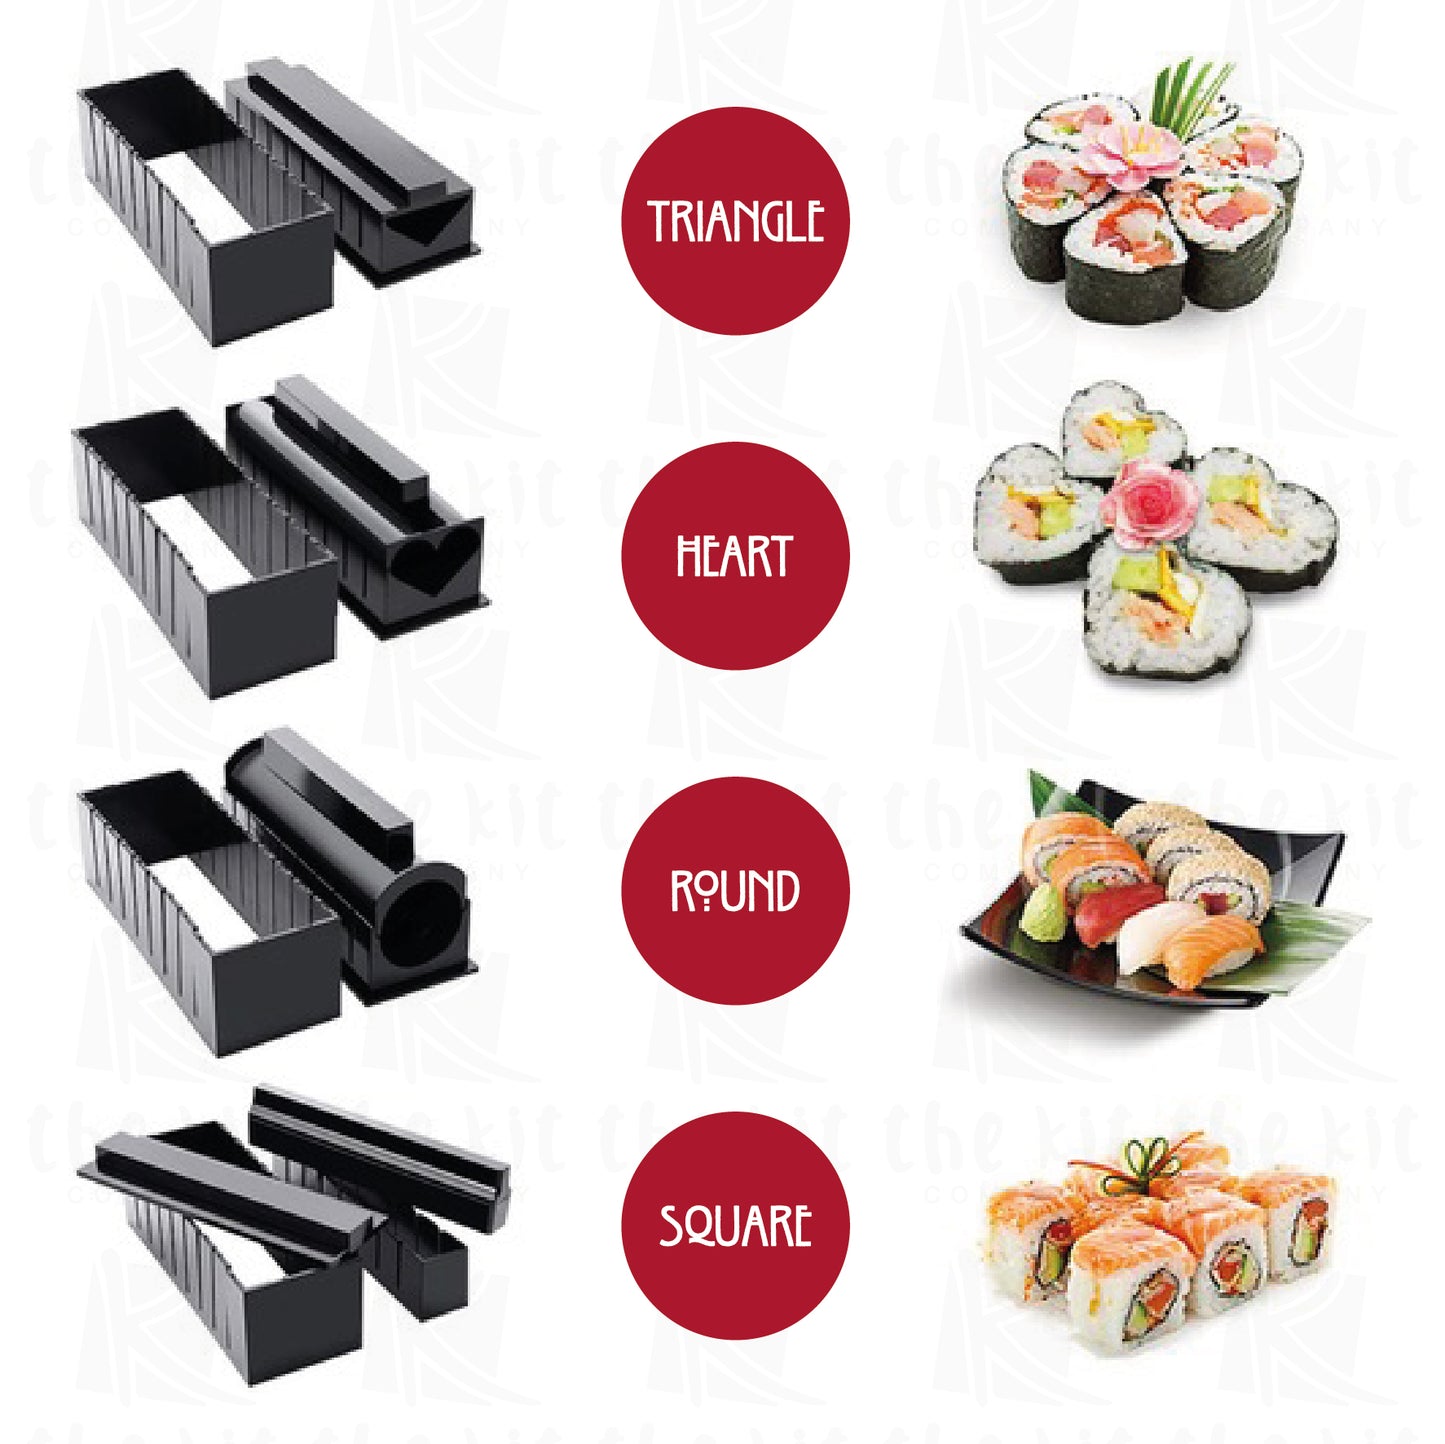 Kit para hacer Sushi Estándar Cocinista